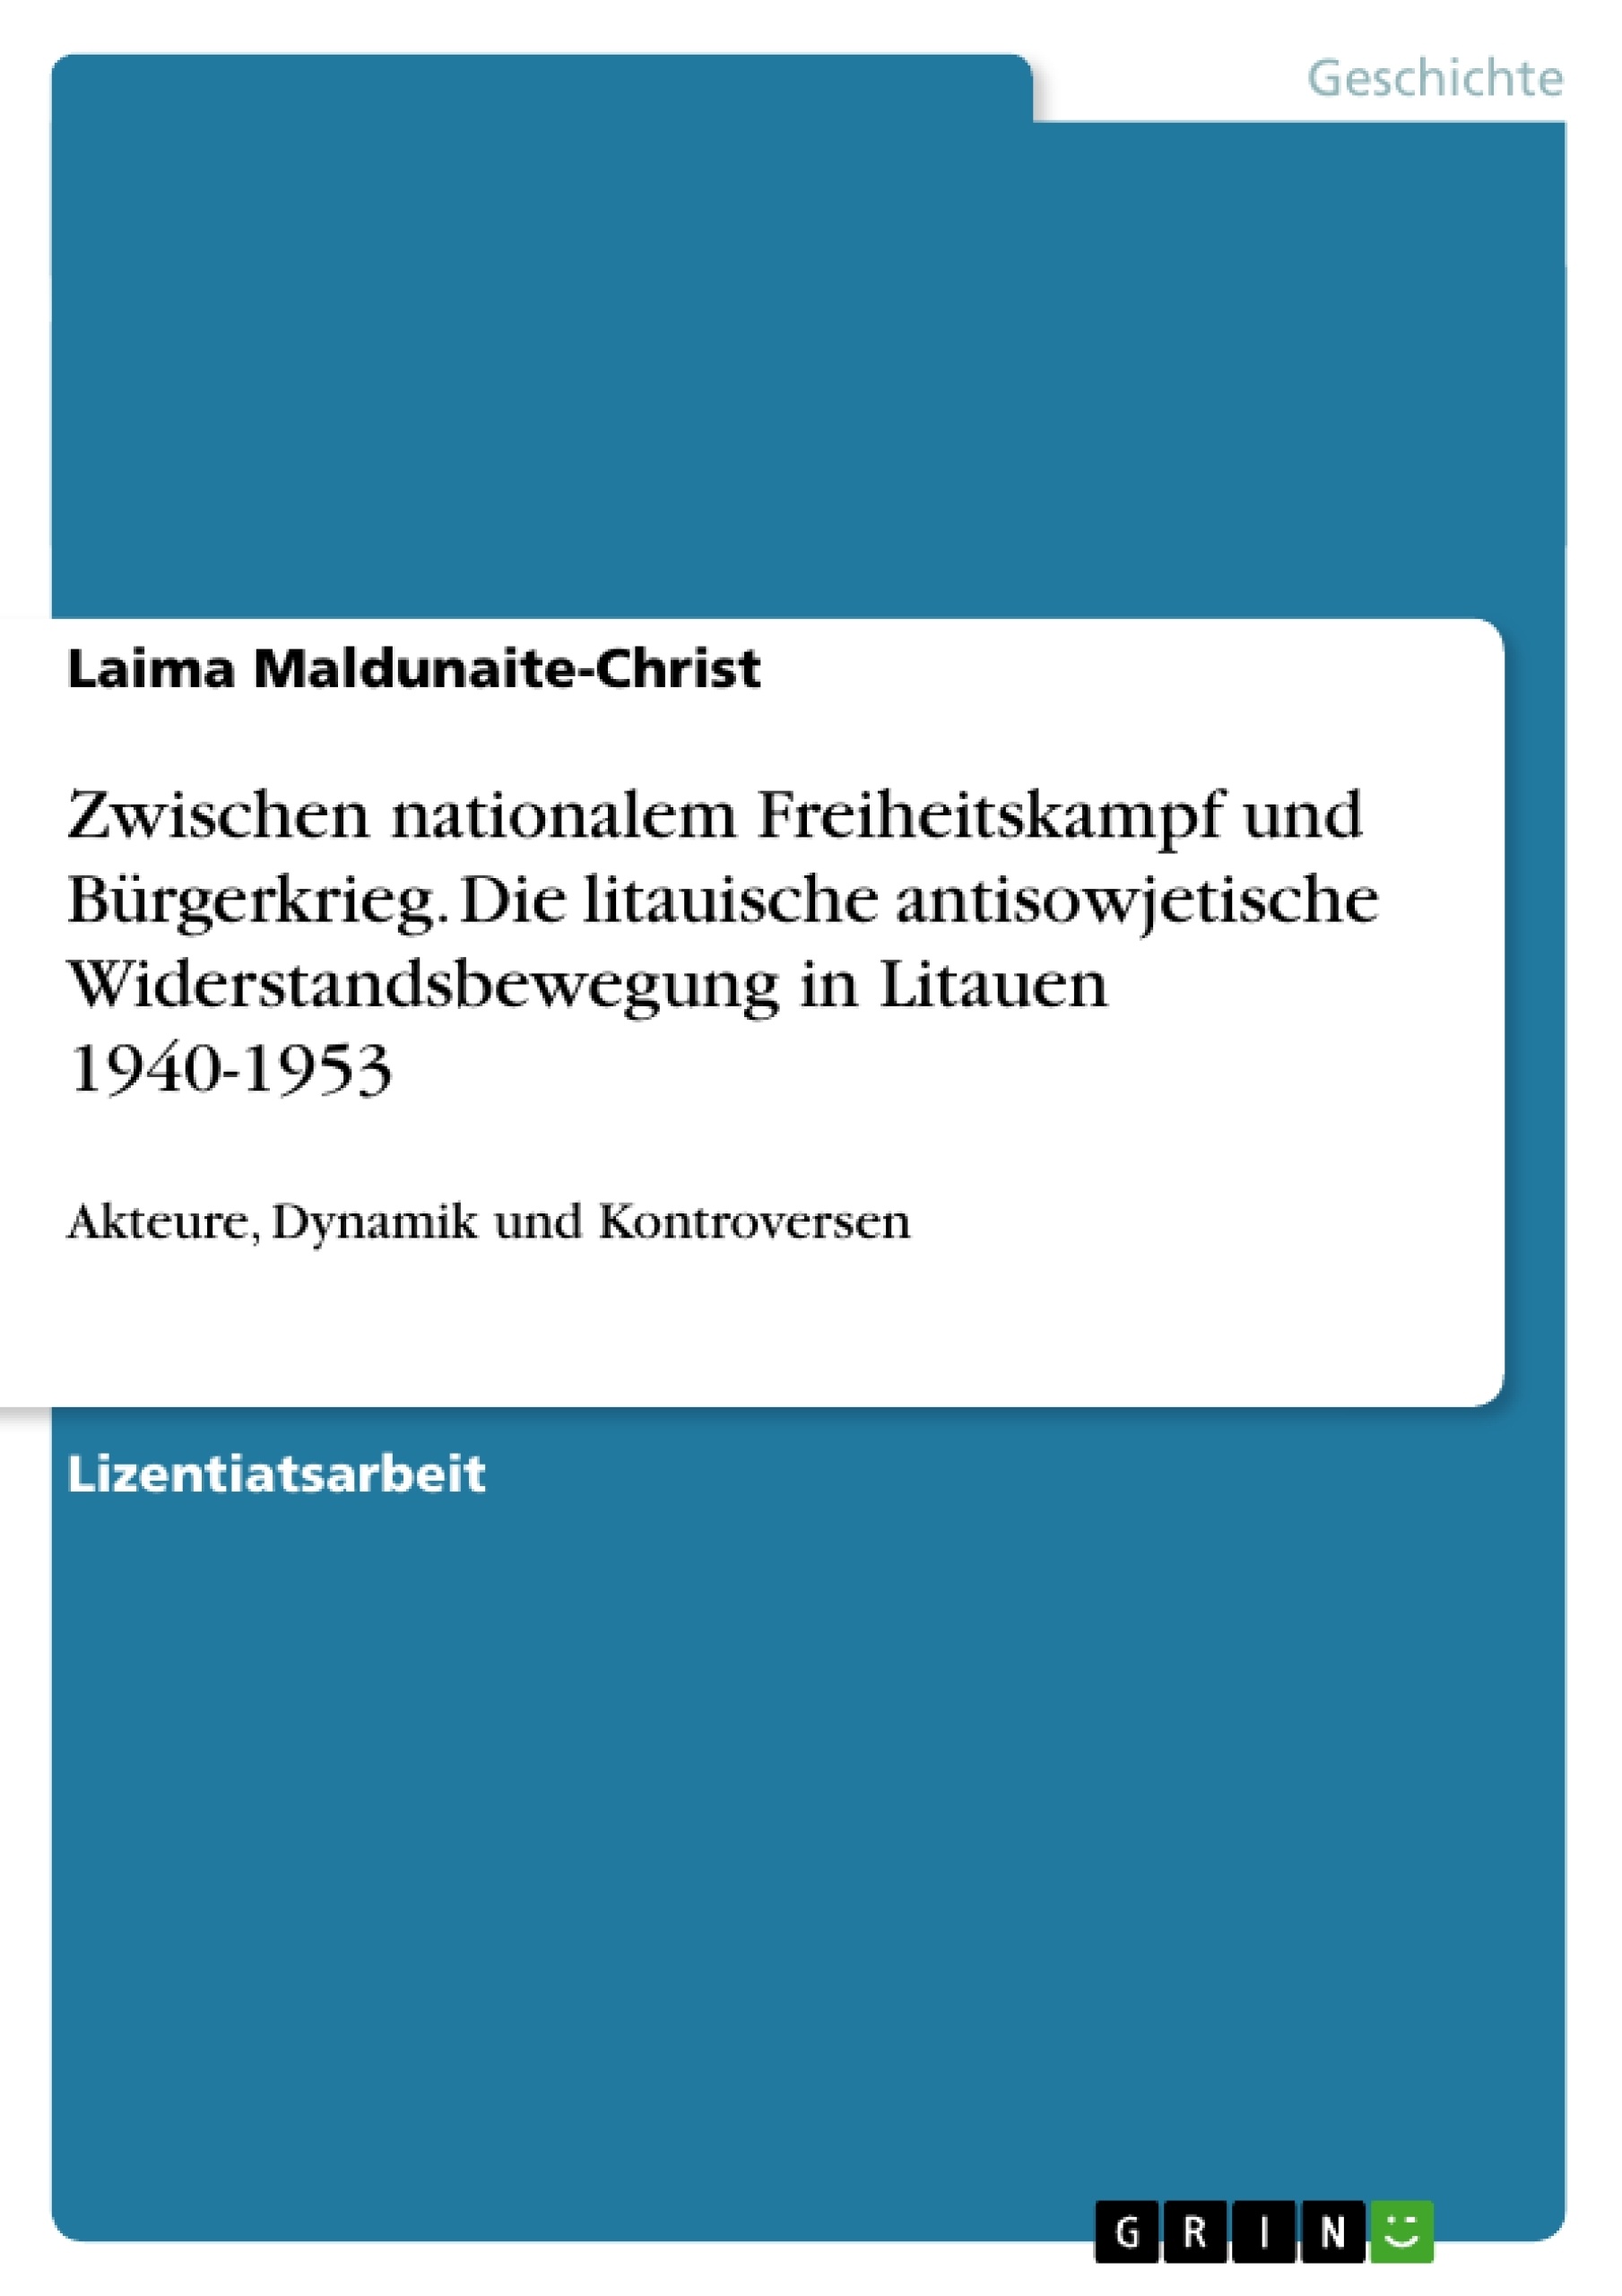 Titre: Zwischen nationalem Freiheitskampf und Bürgerkrieg. Die litauische antisowjetische Widerstandsbewegung in Litauen 1940-1953